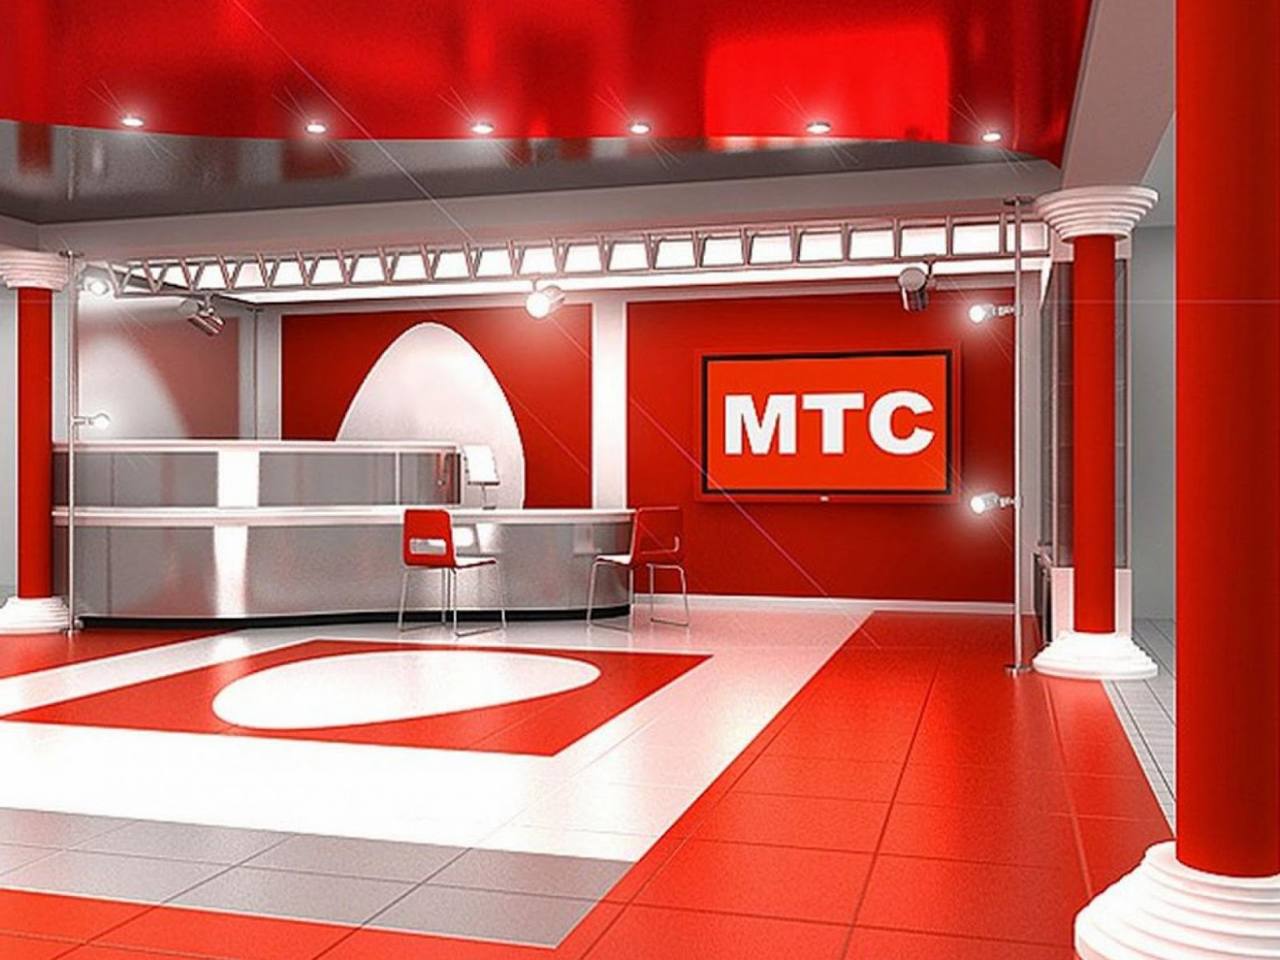 ПАО «МТС» объявила о переходе на собственную технологическую платформу The Platform